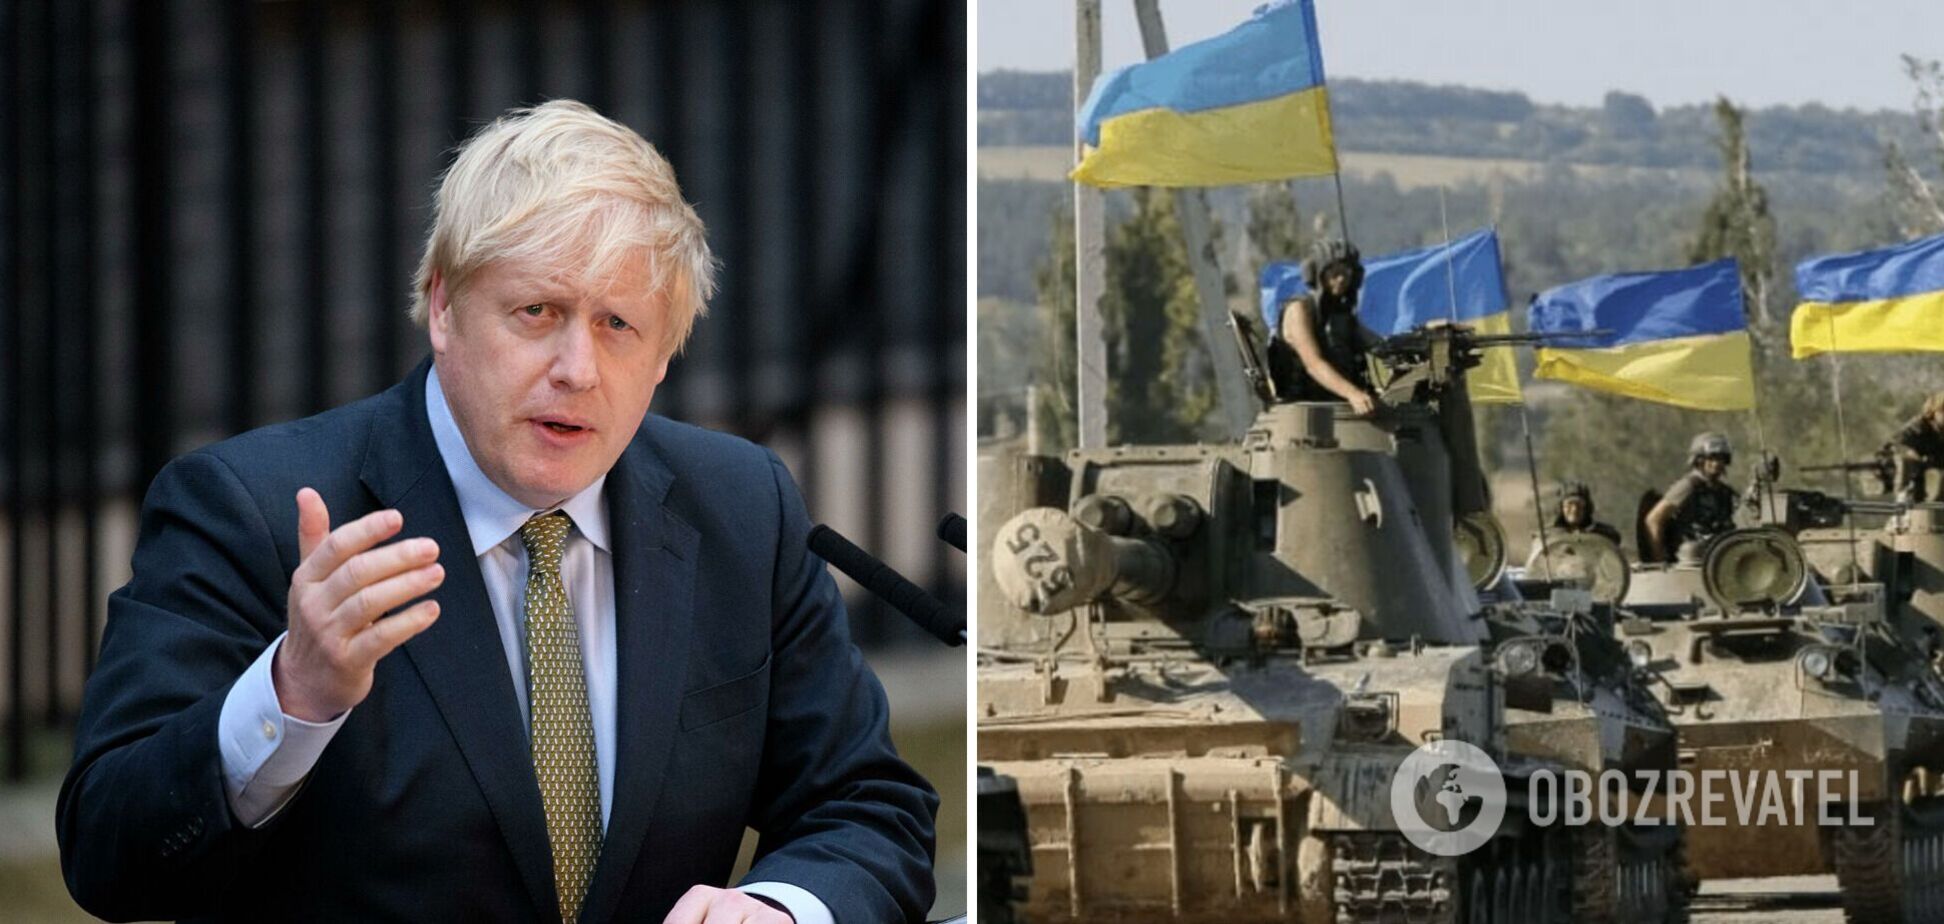 'Ми зануримо економіку Путіна в параліч': Джонсон закликав Захід не боятися ядерної війни і дати Україні всю необхідну зброю